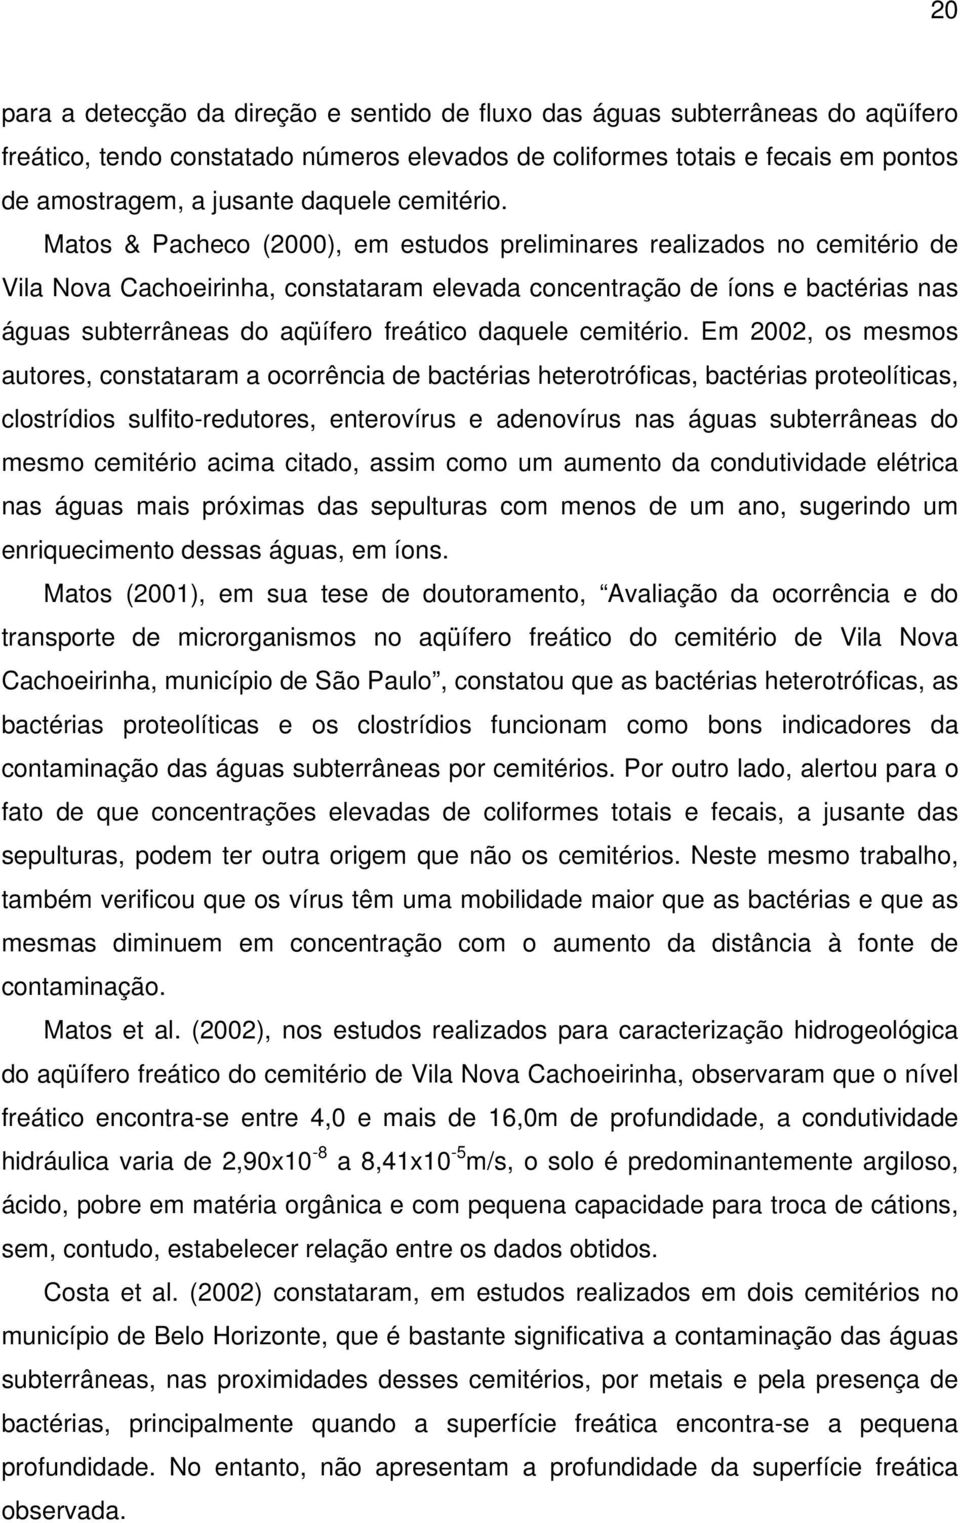 Matos & Pacheco (2000), em estudos preliminares realizados no cemitério de Vila Nova Cachoeirinha, constataram elevada concentração de íons e bactérias nas águas subterrâneas do aqüífero freático  Em